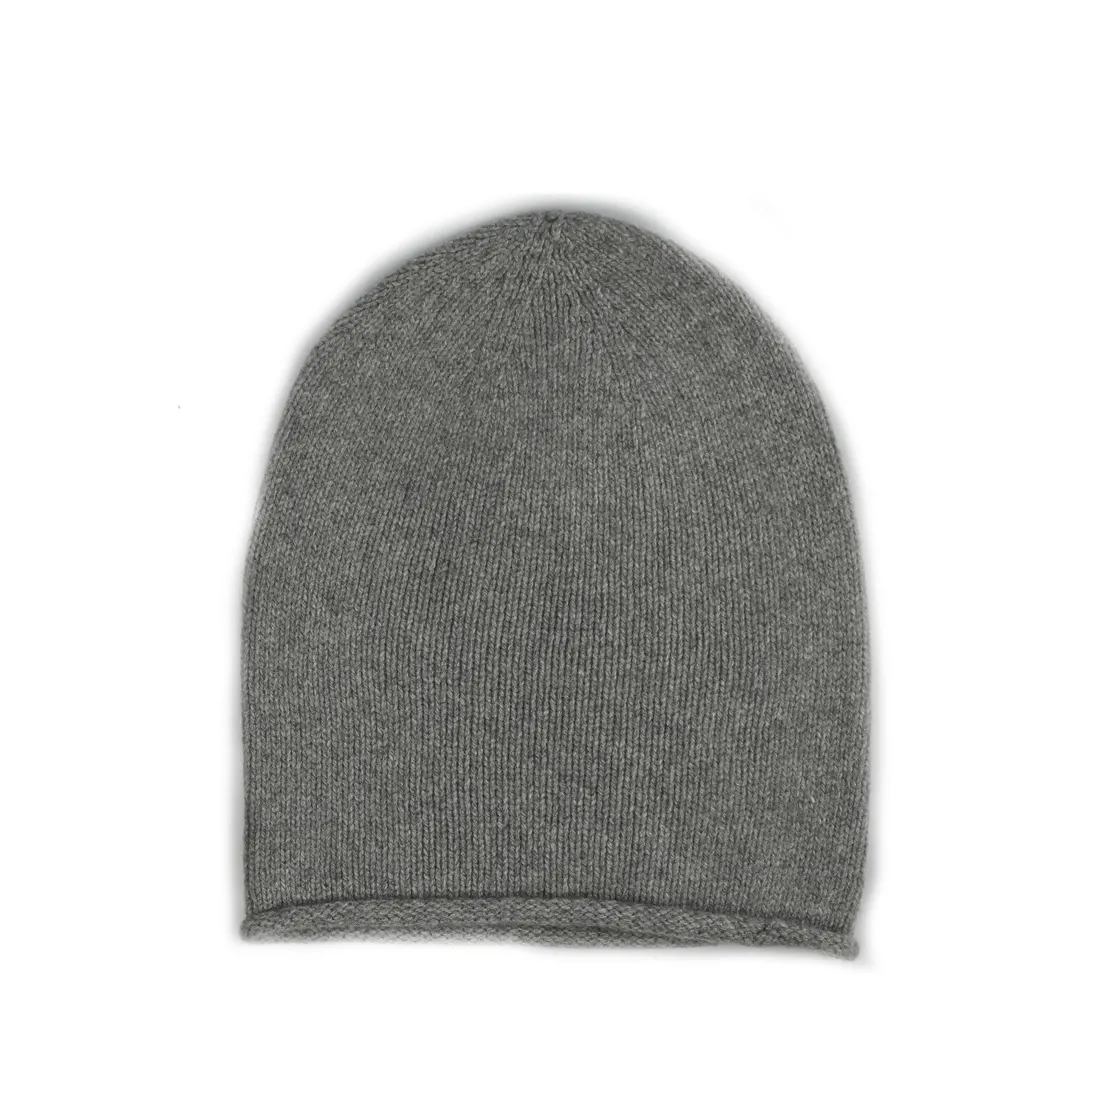 Tasarım kendi kış kaşmir el örme bere örme şapka ile özel etiket